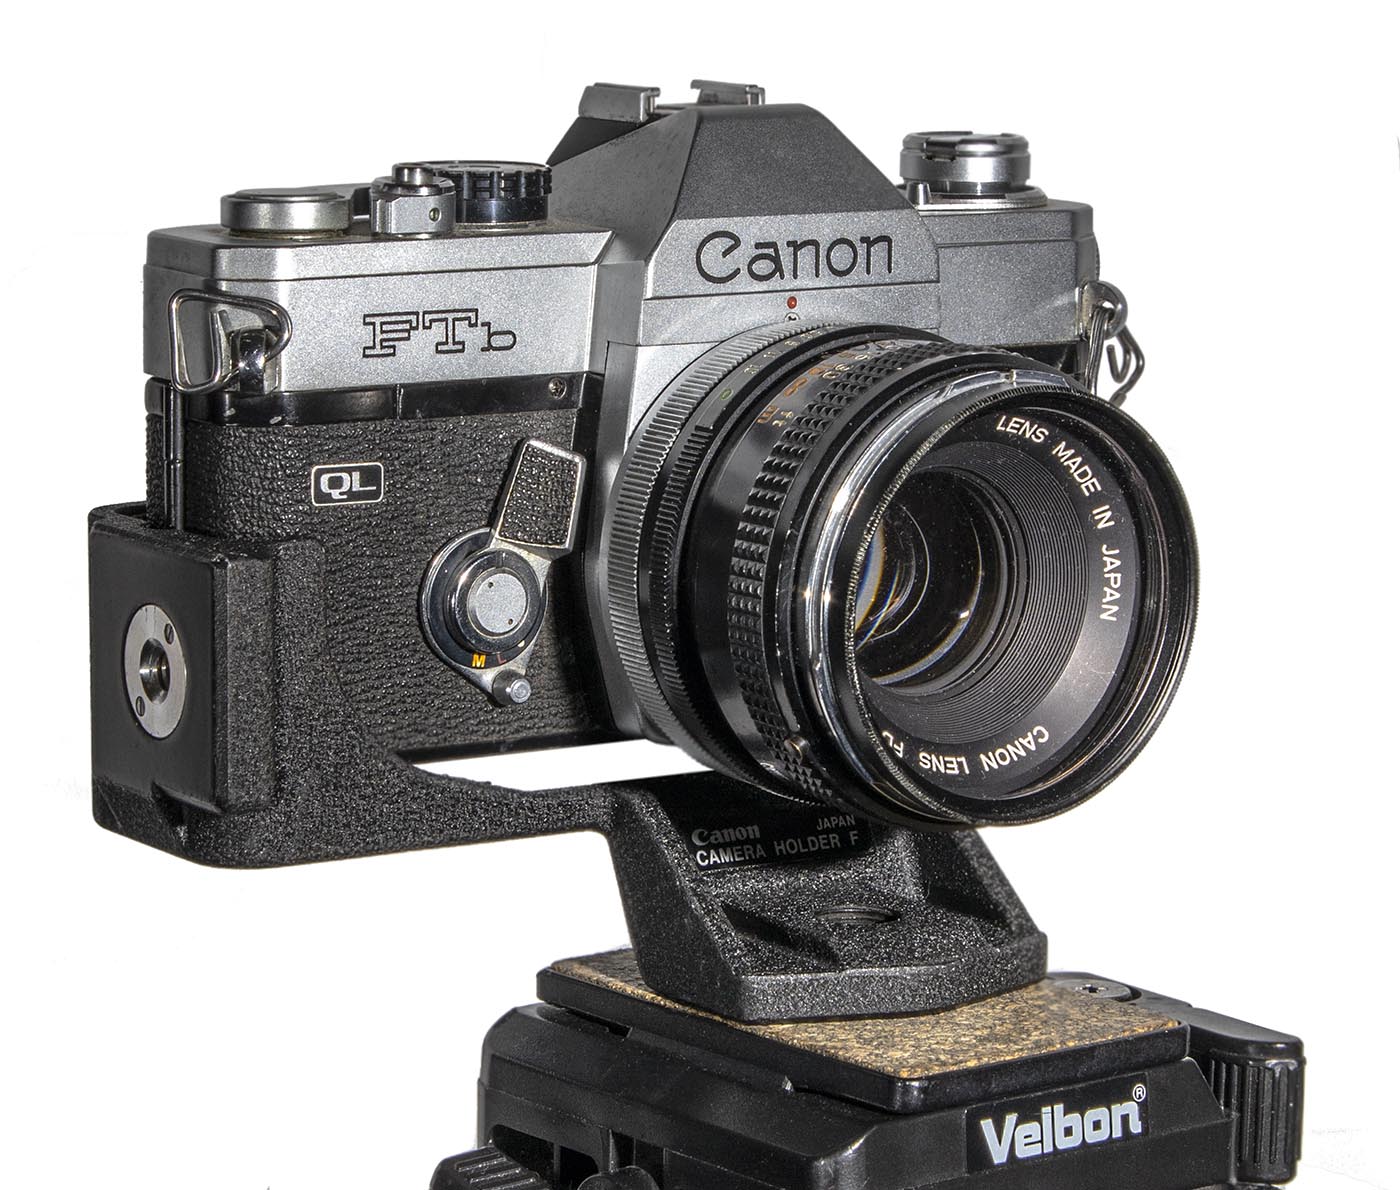 Canon Camera Holder F